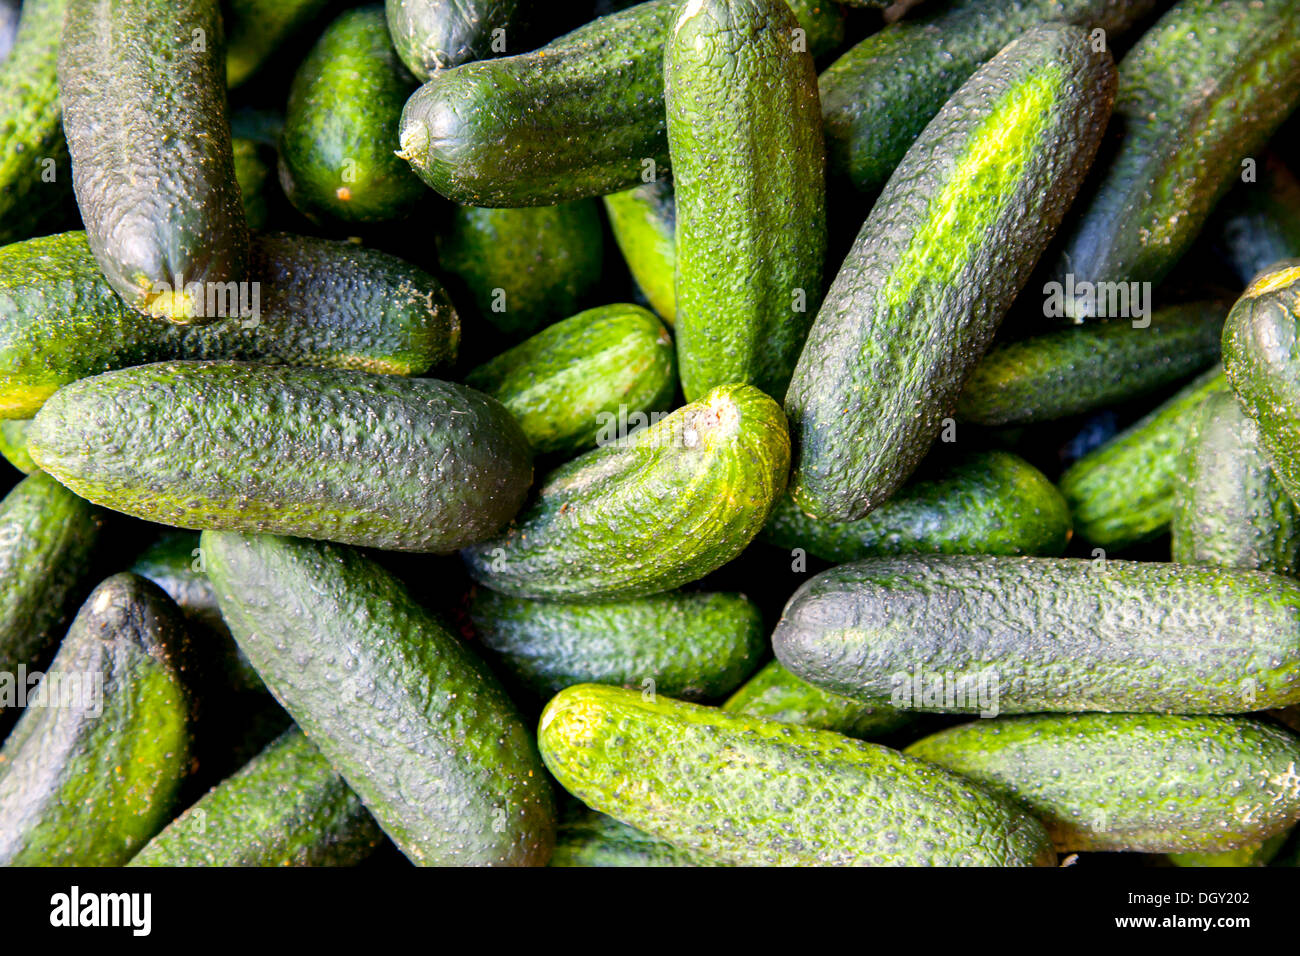 Pickling cucumbers, Hamburg, Hamburg, Germany Stock Photo